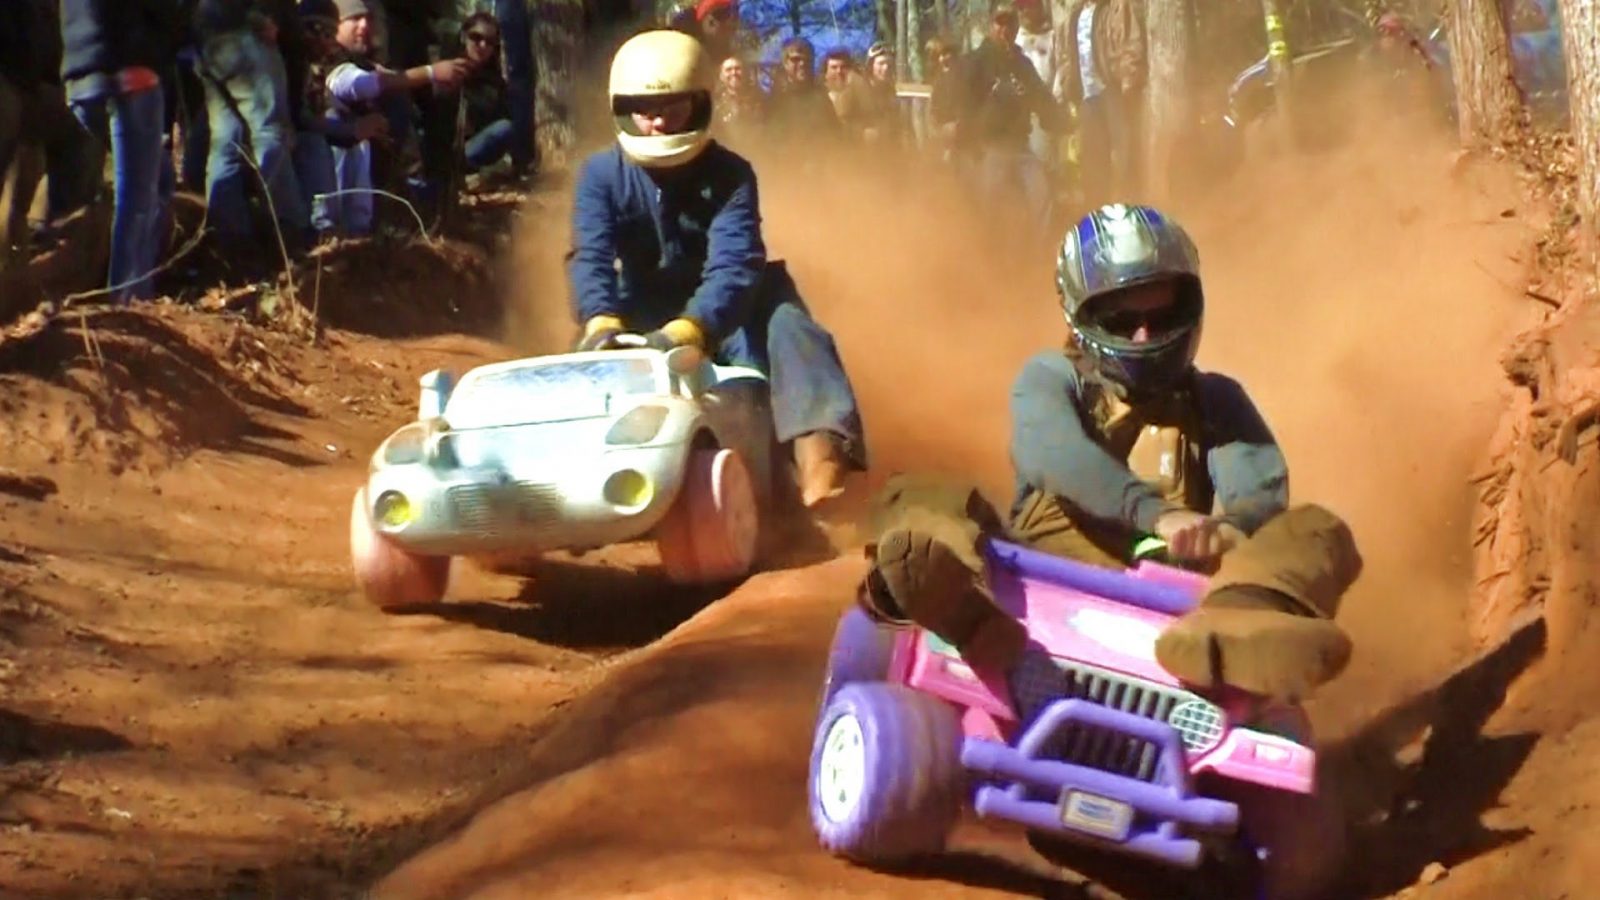 Barbie Jeep Racing: Nije kao što zvuči &#8211; ekstremno je (VIDEO), Life.ba